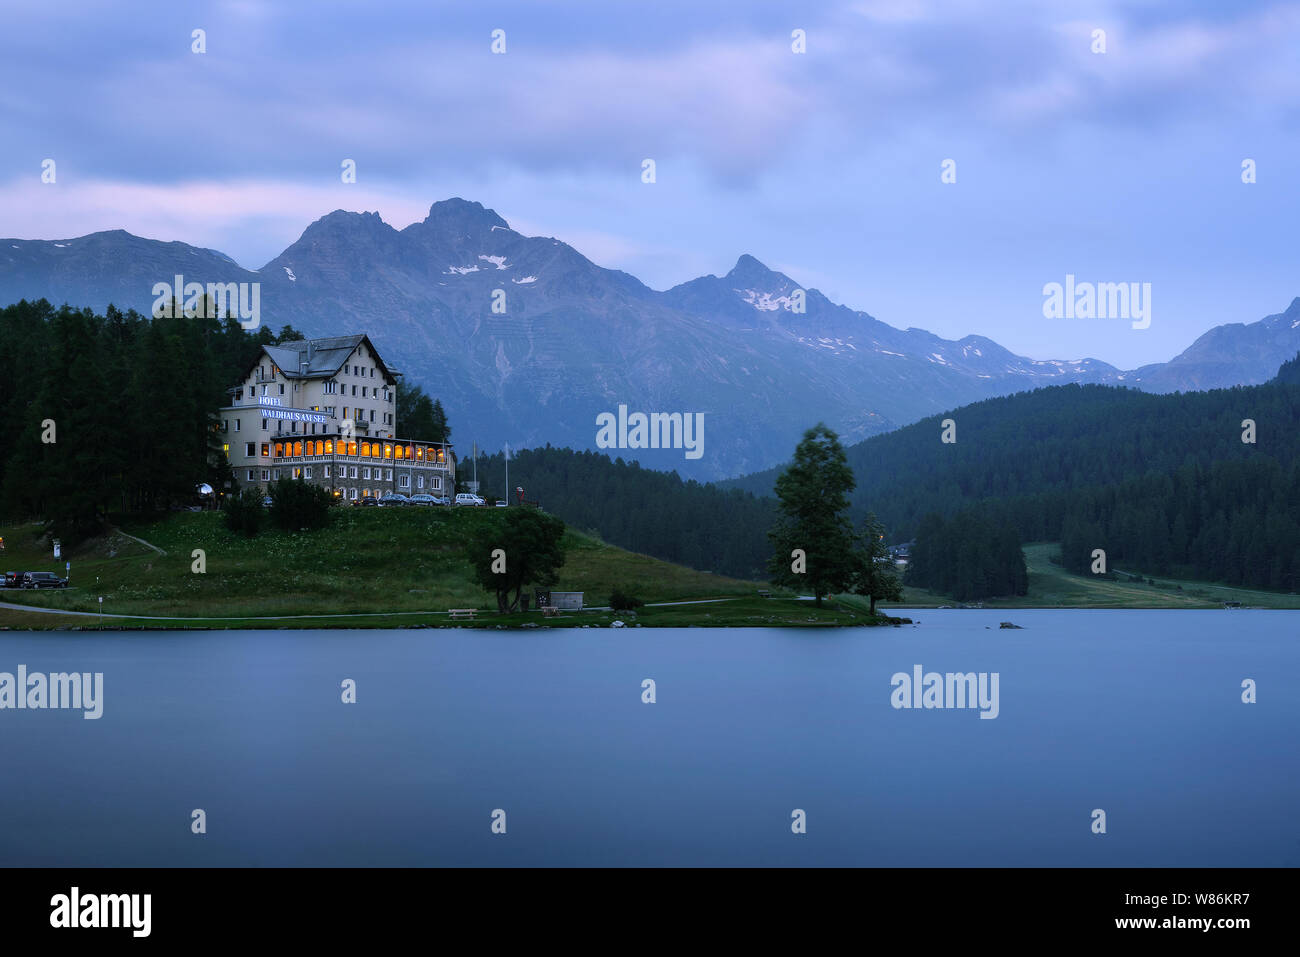 Hotel e ristorante Waldhaus am See presso il lago di San Moritzersee in Svizzera Foto Stock